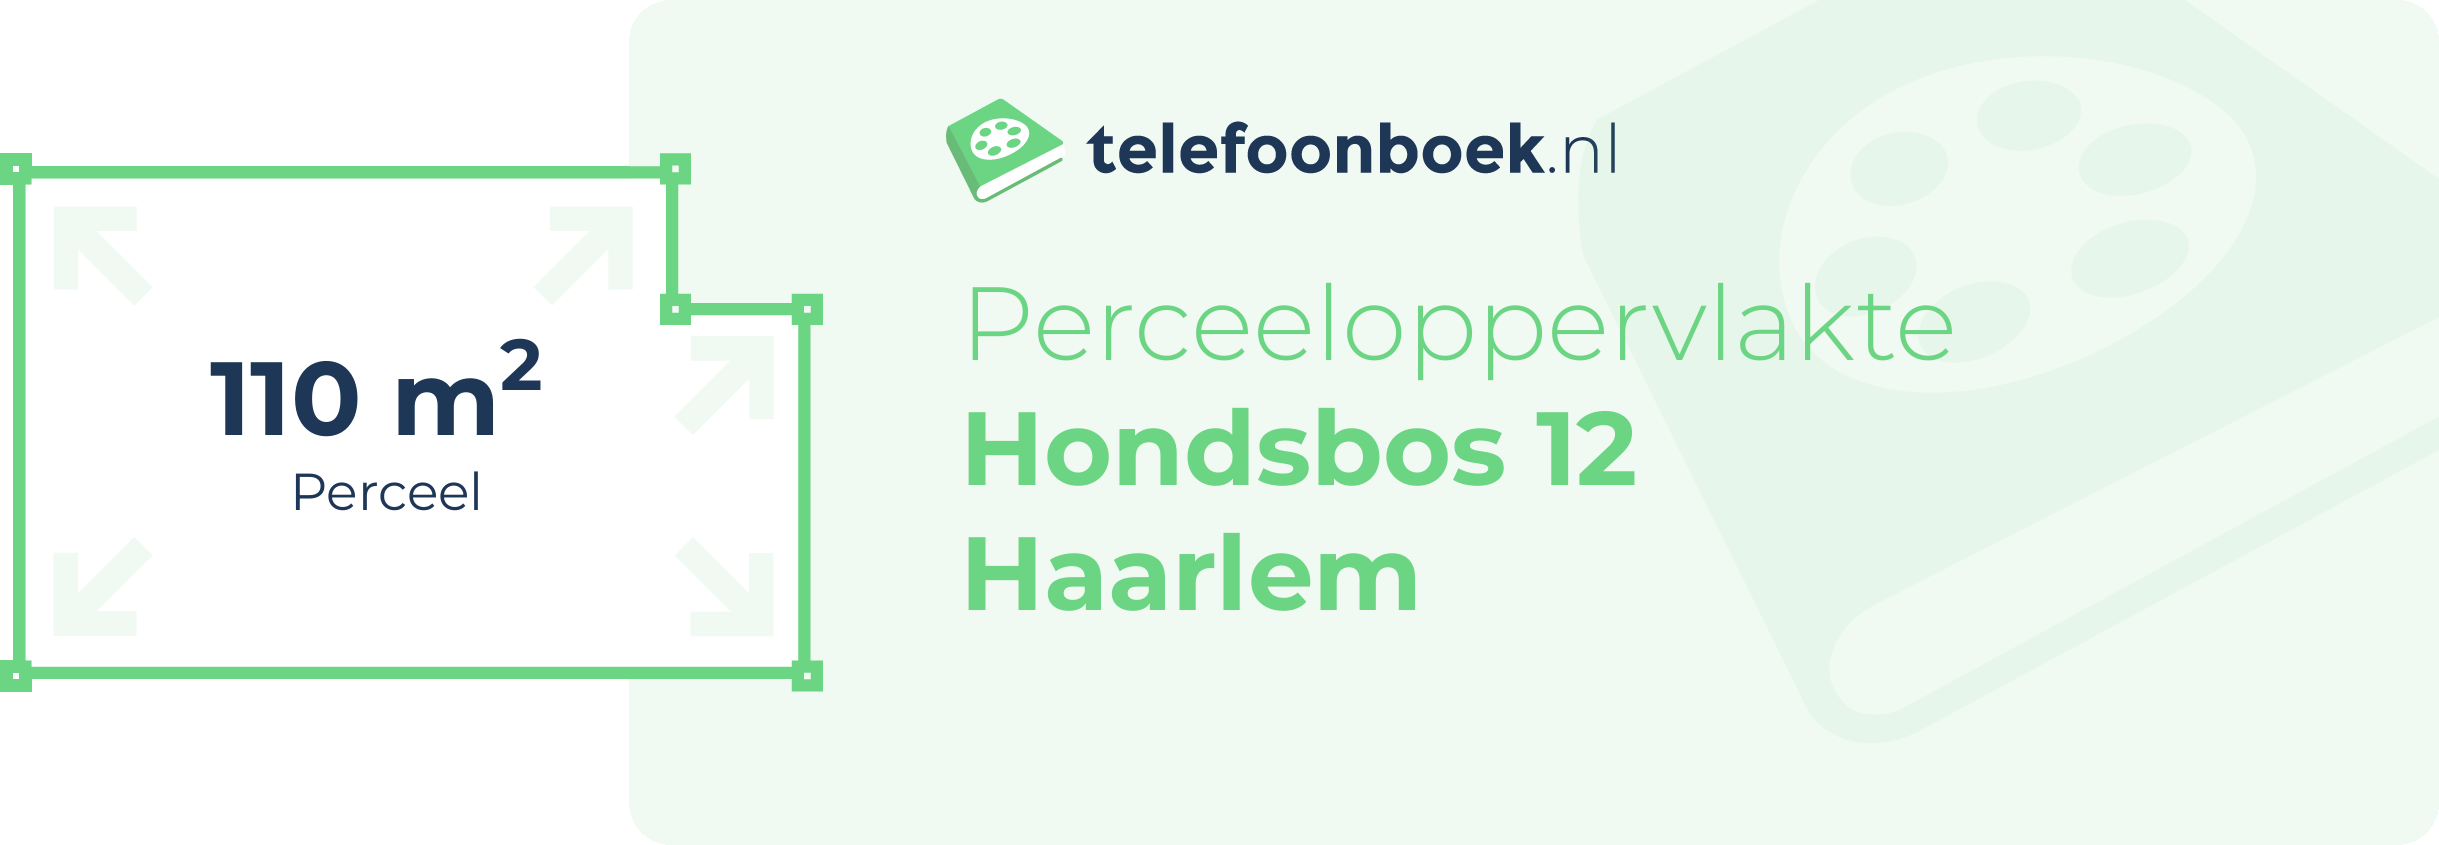 Perceeloppervlakte Hondsbos 12 Haarlem